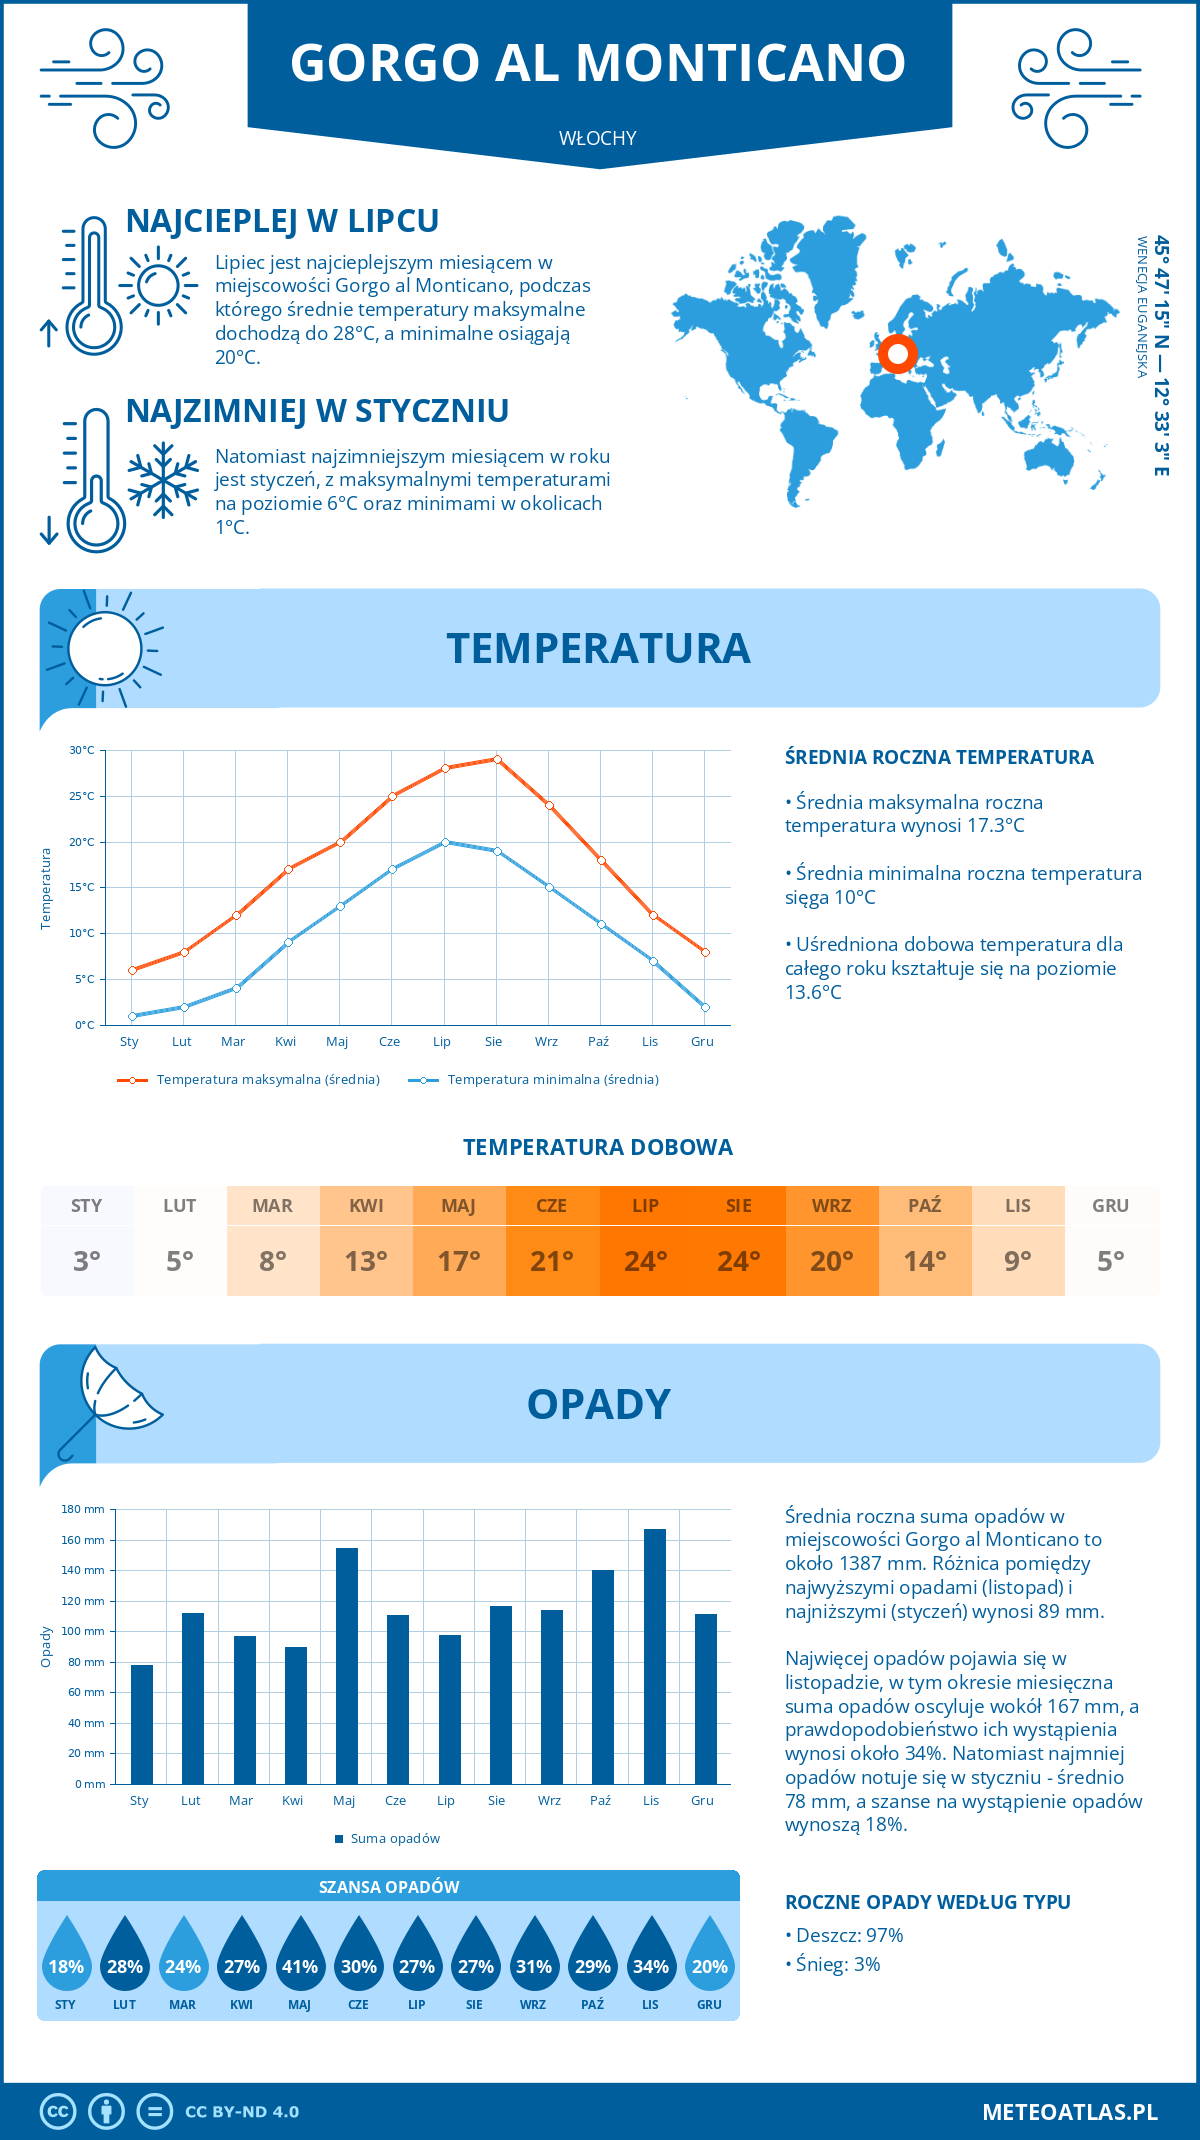 Pogoda Gorgo al Monticano (Włochy). Temperatura oraz opady.